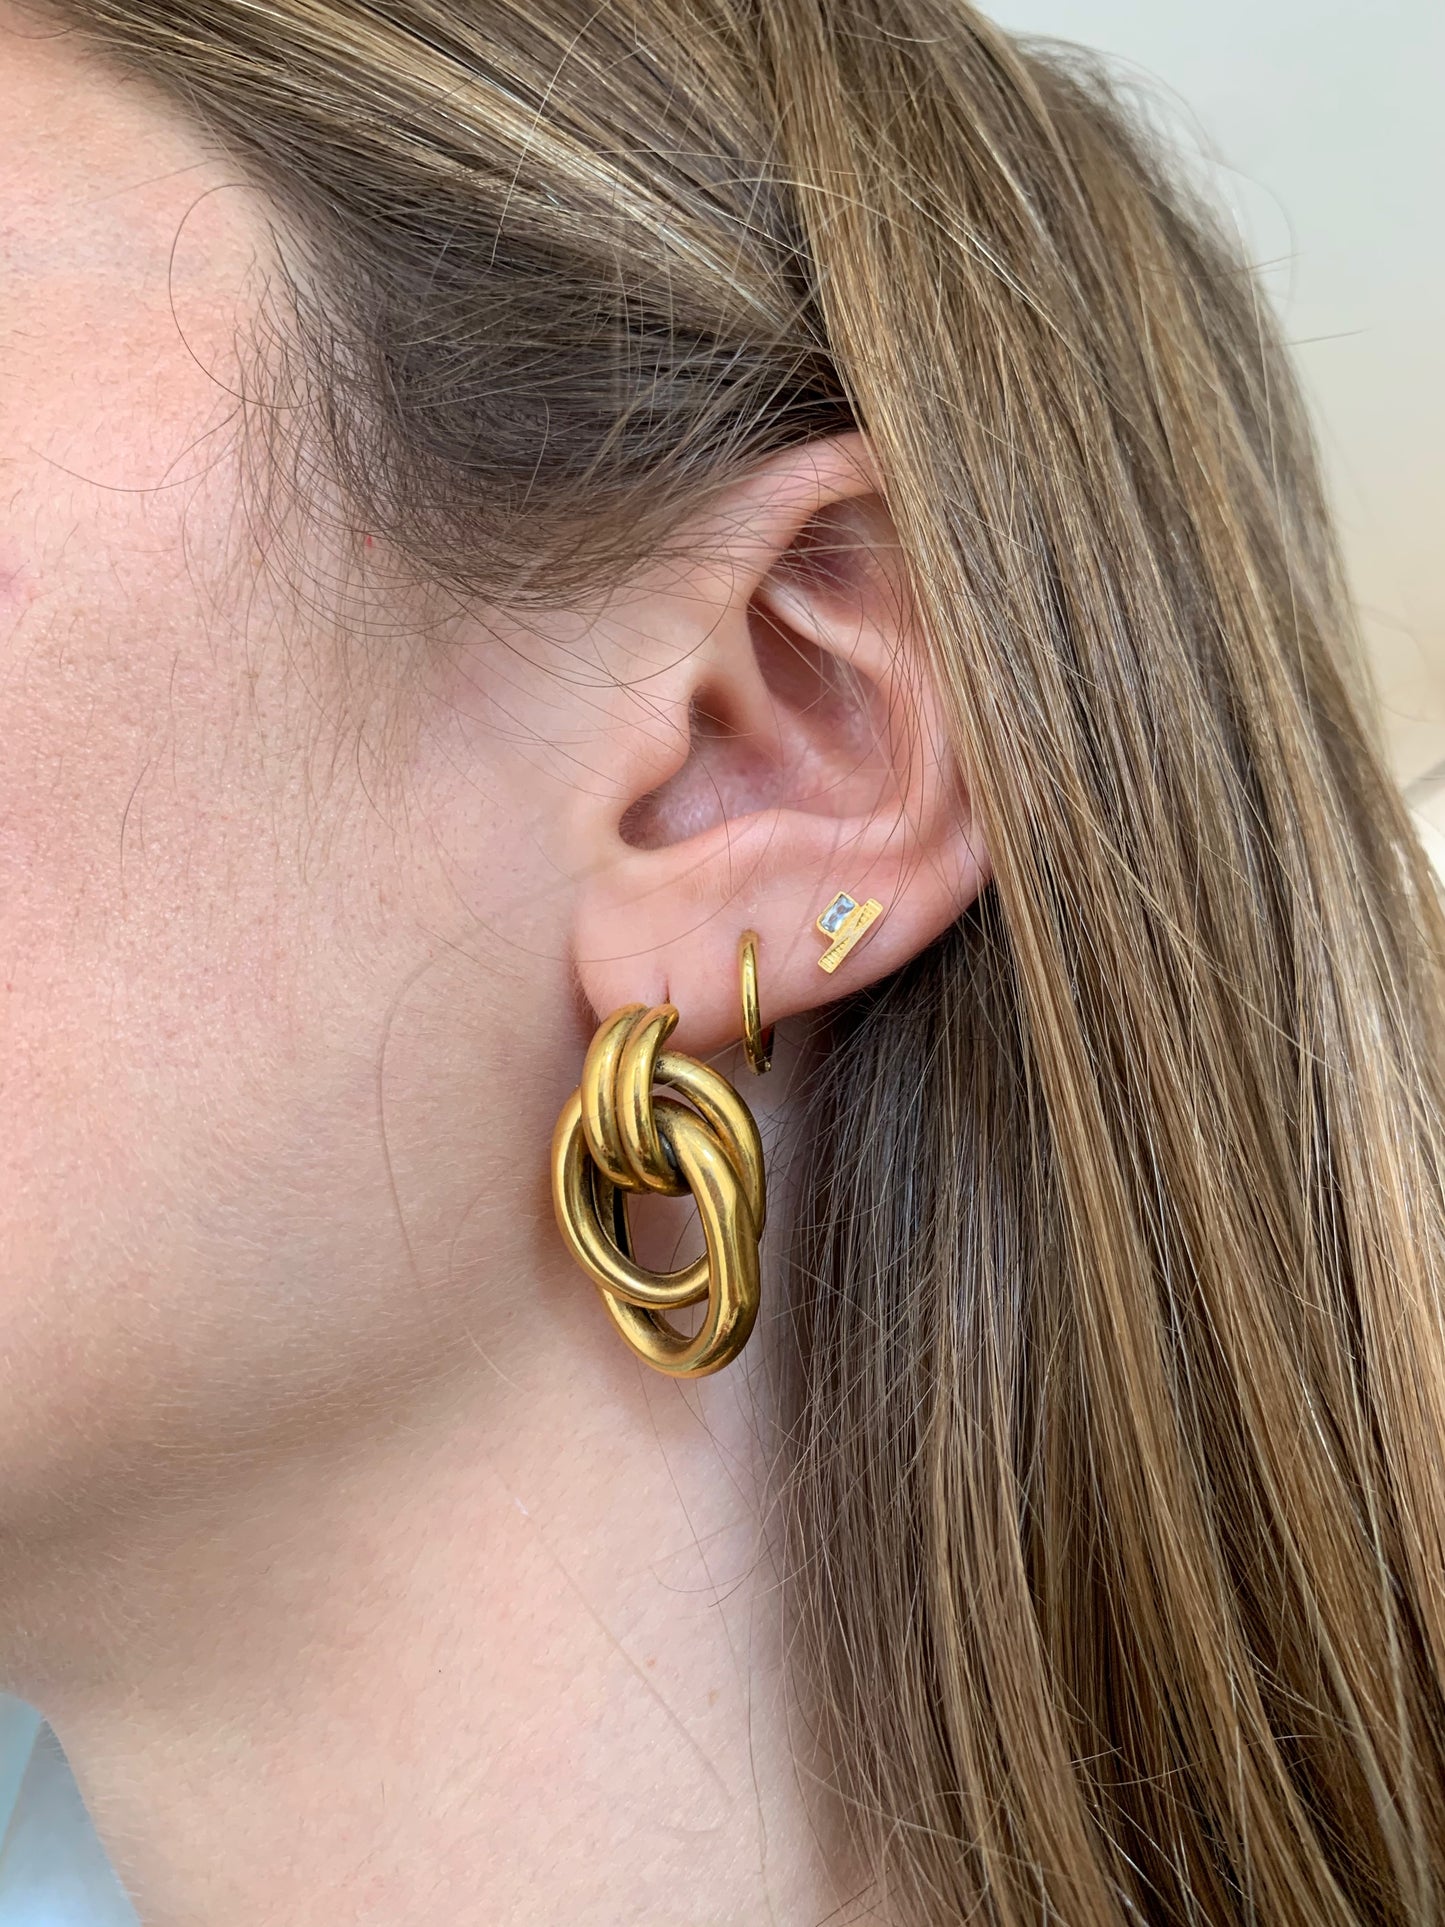 Single earrings Lined bar